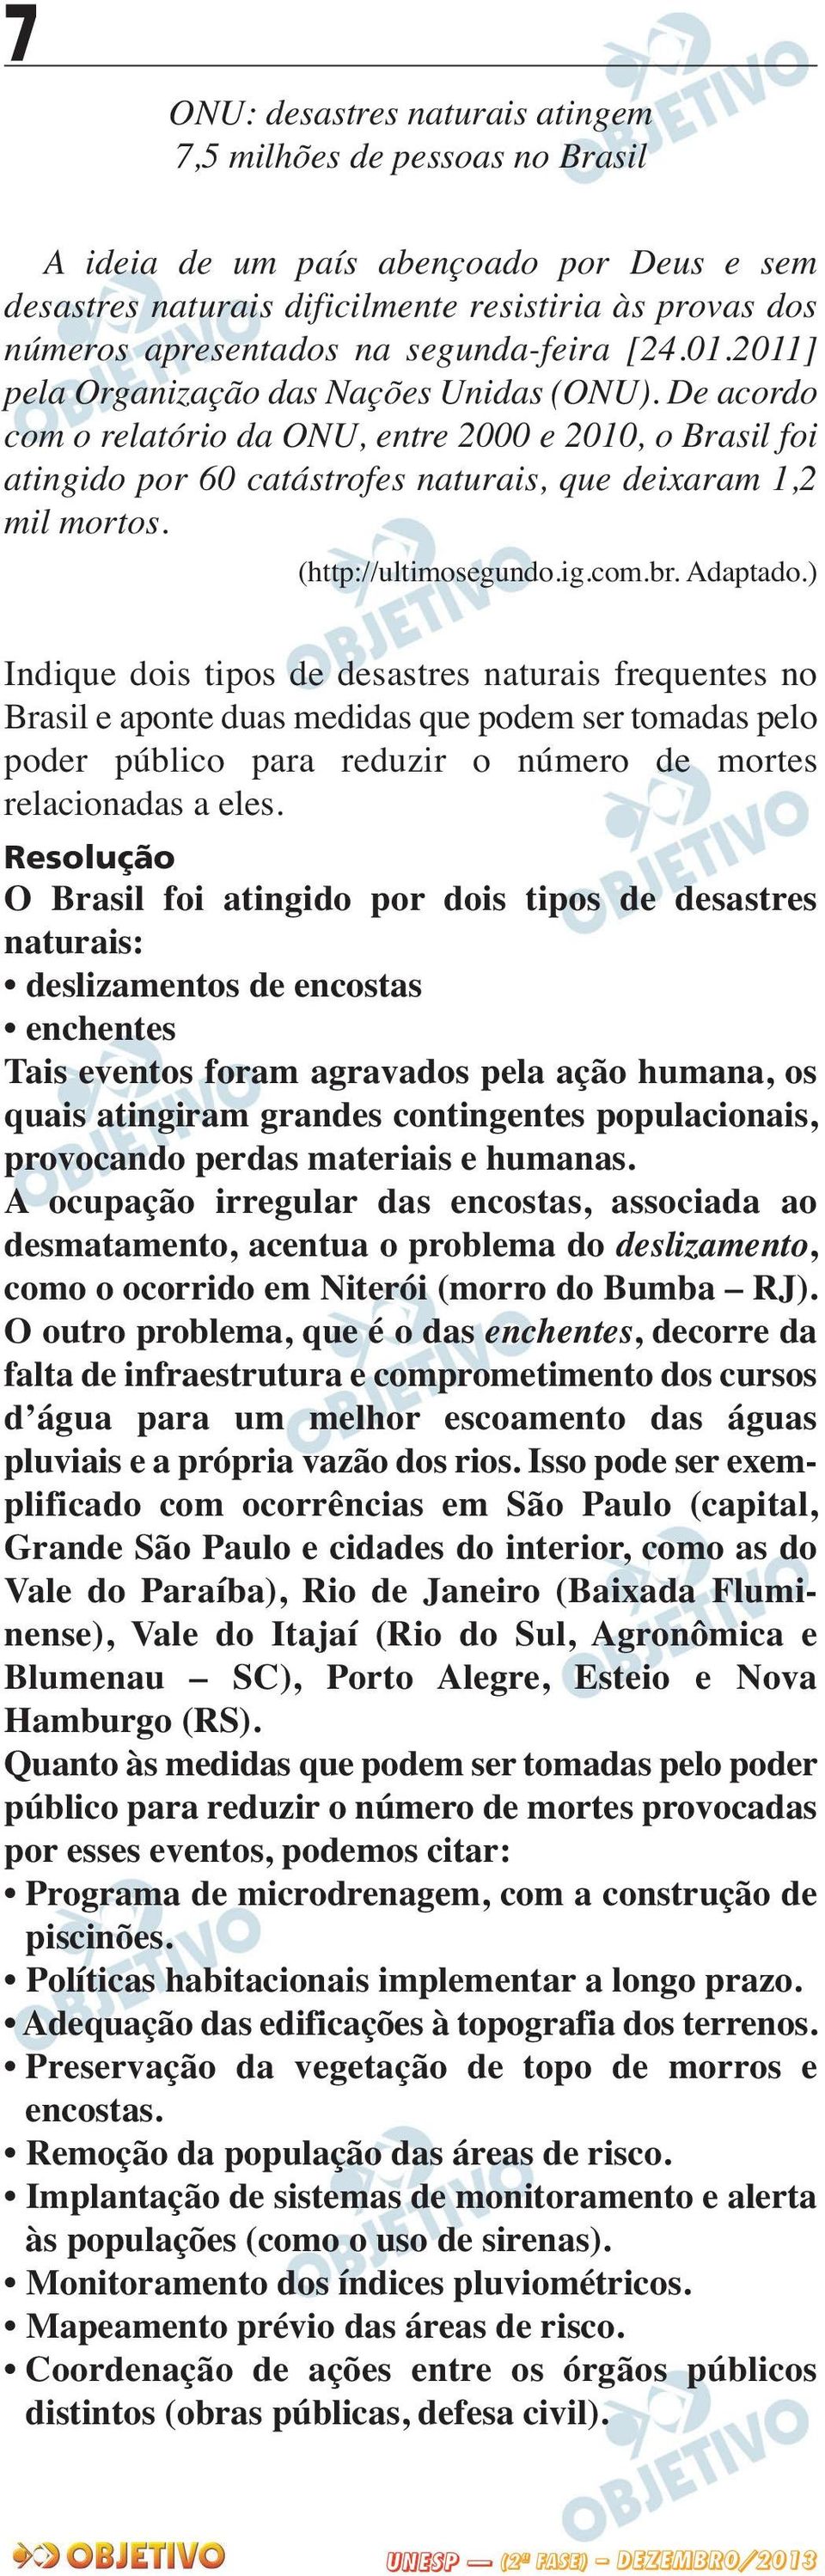 De acordo com o relatório da ONU, entre 2000 e 2010, o Brasil foi atingido por 60 catástrofes naturais, que deixaram 1,2 mil mortos. (http://ultimosegundo.ig.com.br. Adaptado.